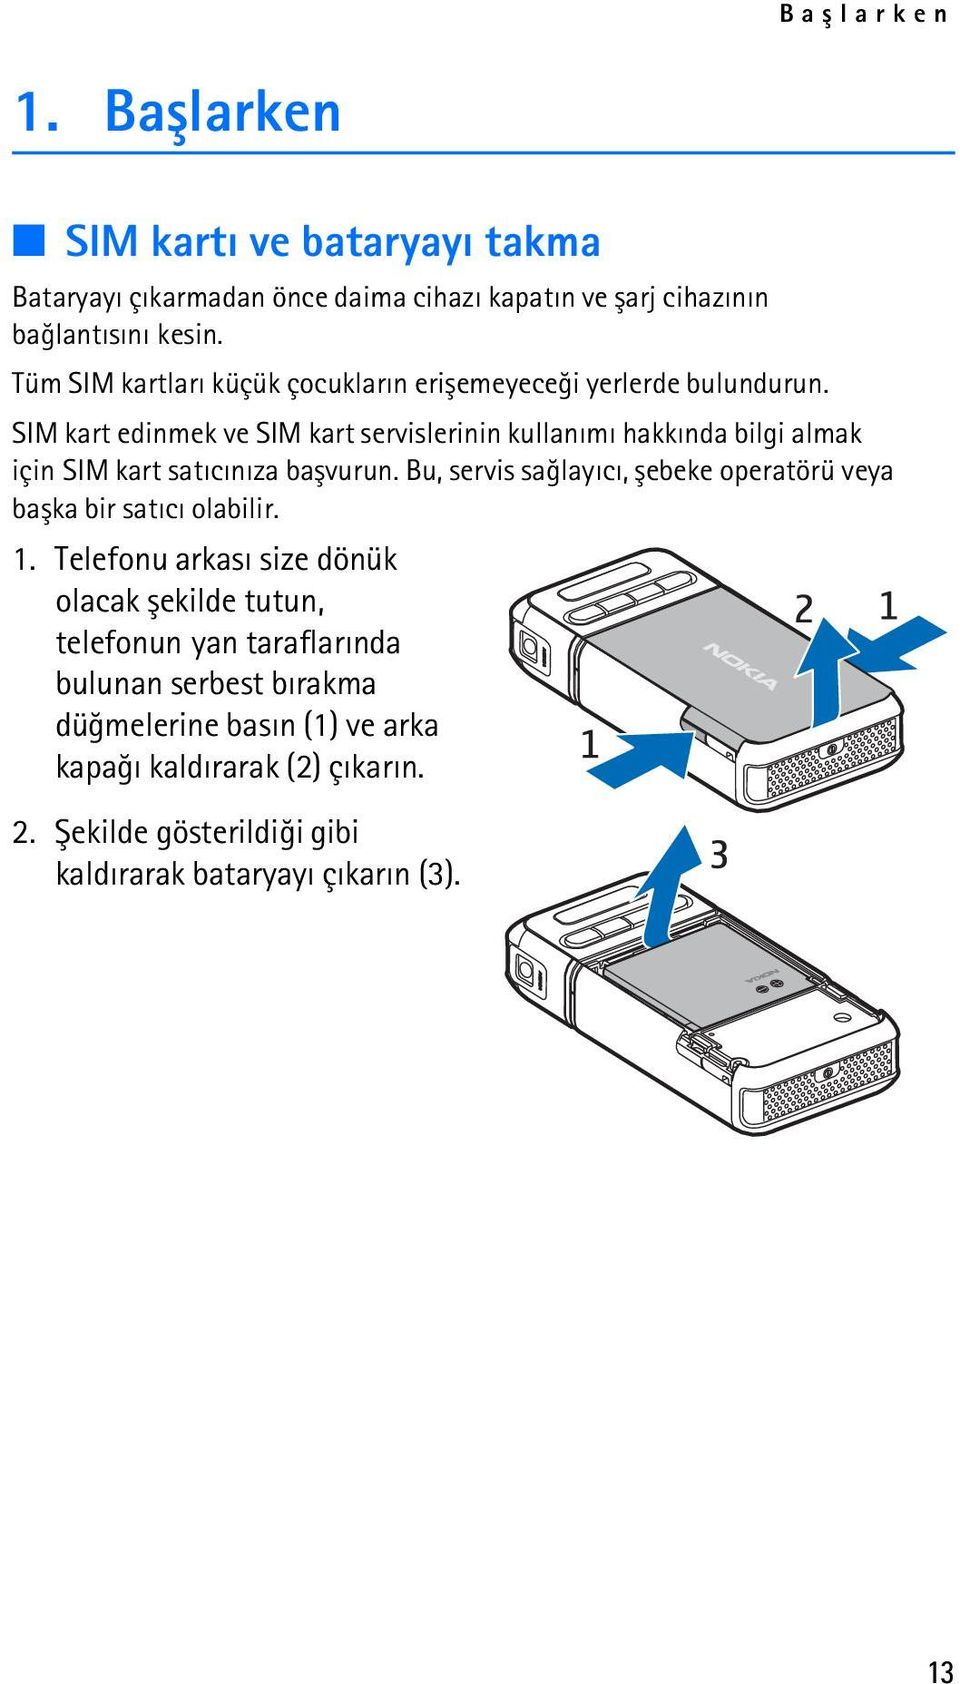 SIM kart edinmek ve SIM kart servislerinin kullanýmý hakkýnda bilgi almak için SIM kart satýcýnýza baþvurun.